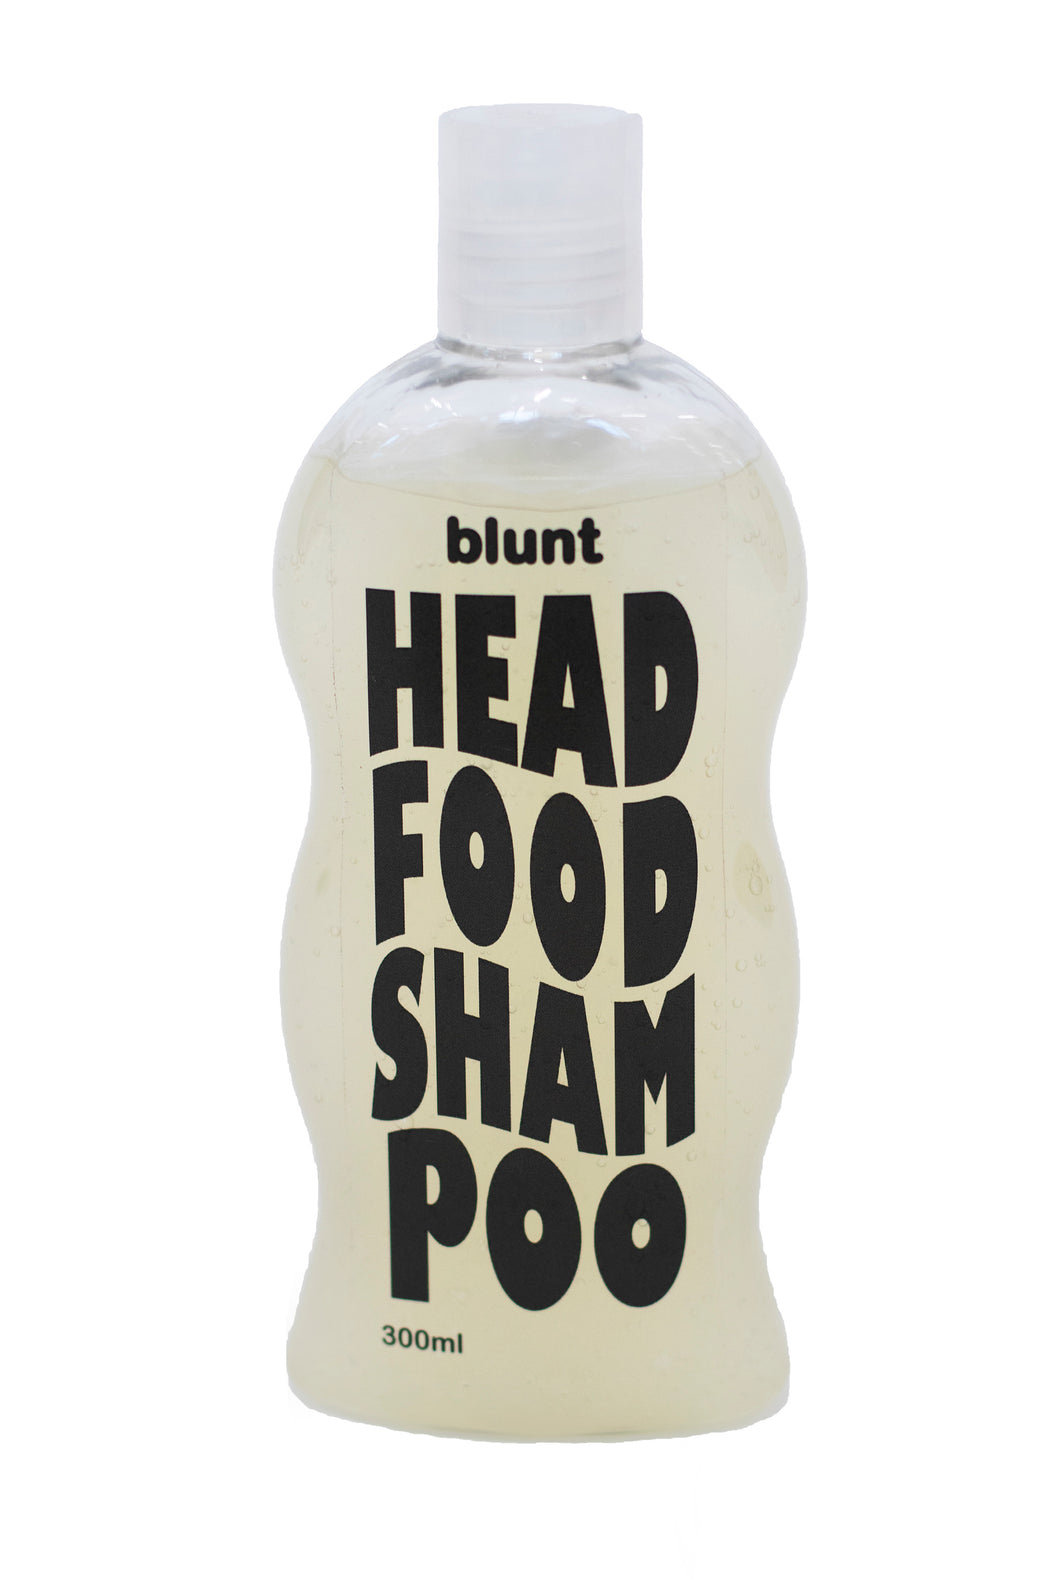 HEADFOOD - Shampoo - feed your head.